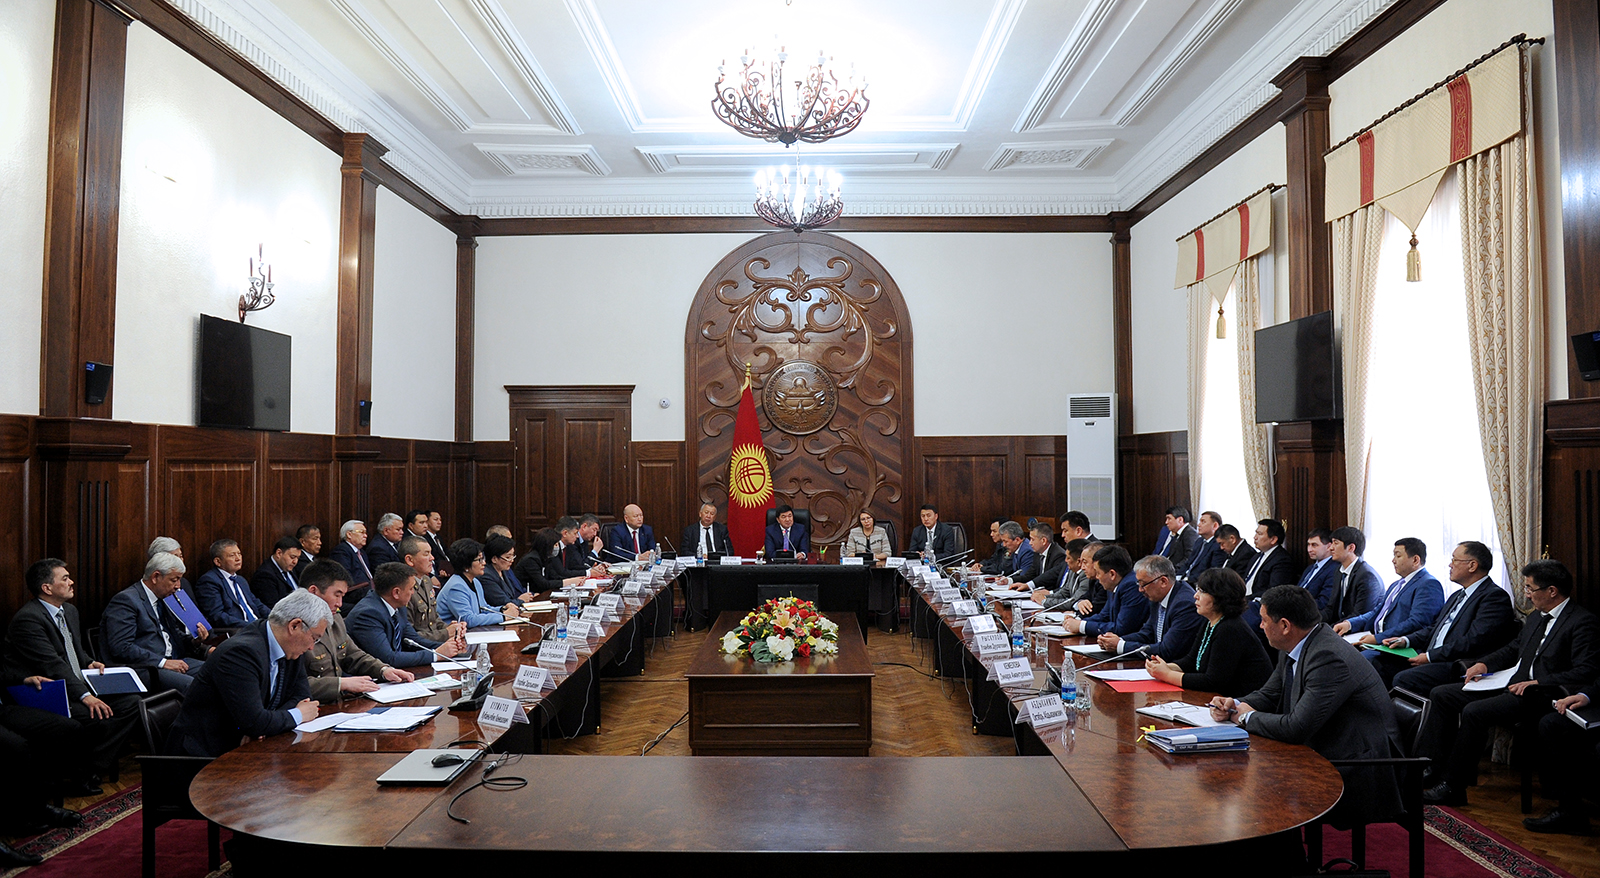 Правительство Кыргызстана утвердило план поддержки населения. Какие решения уже приняты?